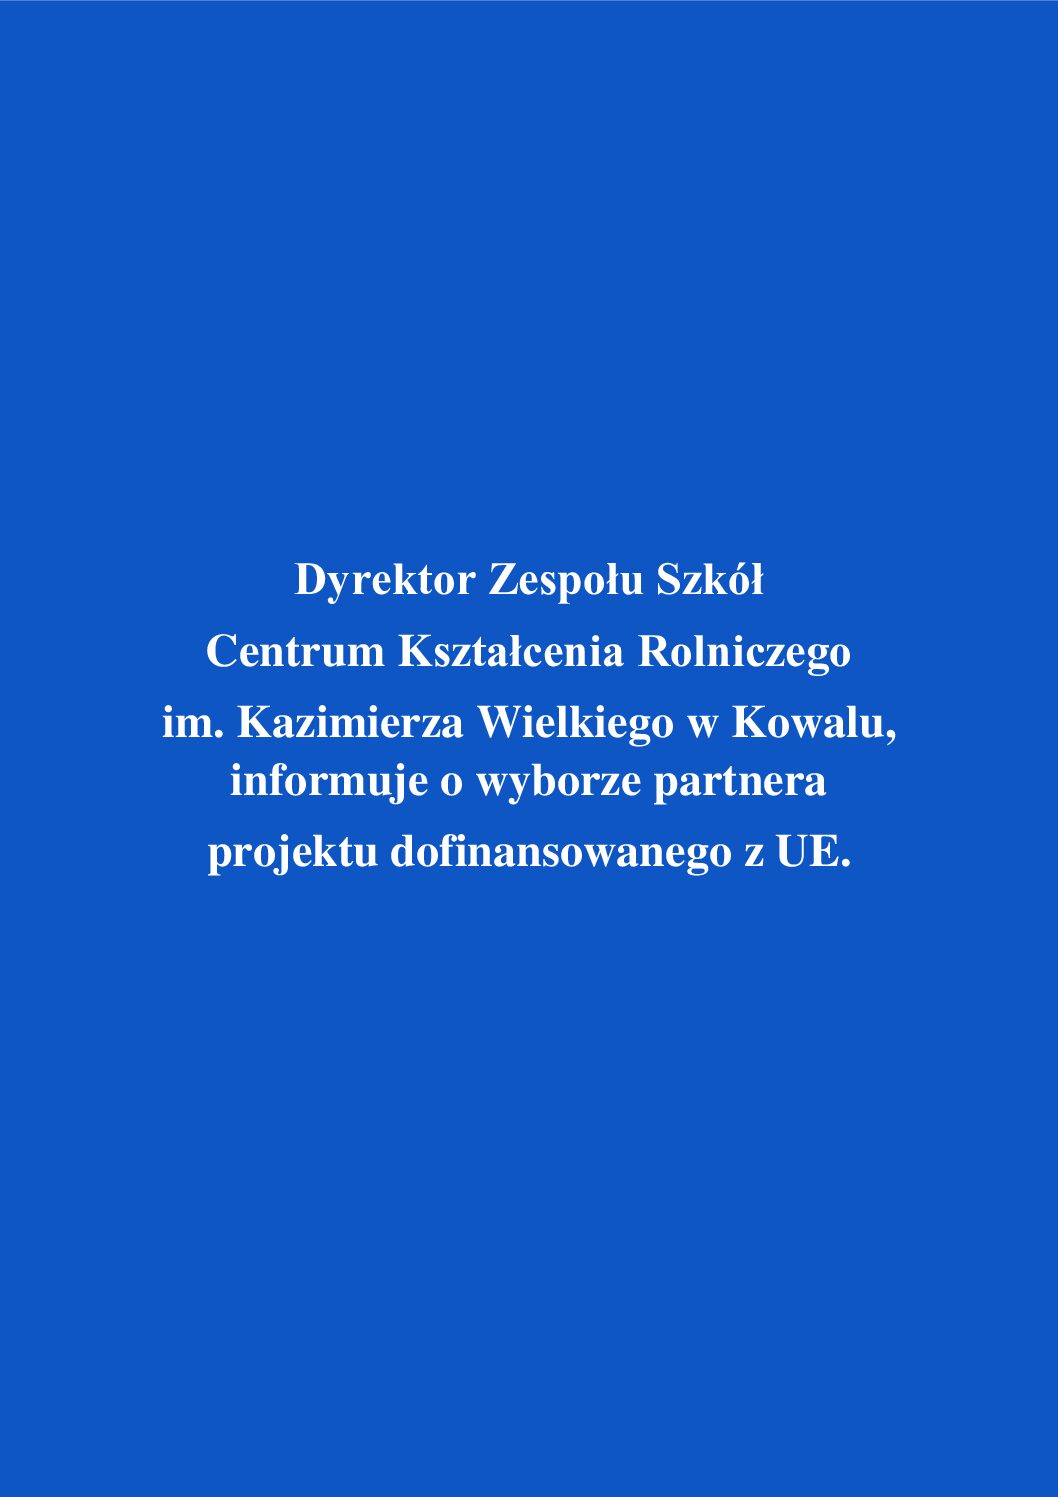 Read more about the article Dyrektor Zespołu Szkół Centrum Kształcenia Rolniczego im. Kazimierza Wielkiego w Kowalu, informuje o wyborze partnera projektu dofinansowanego z UE.